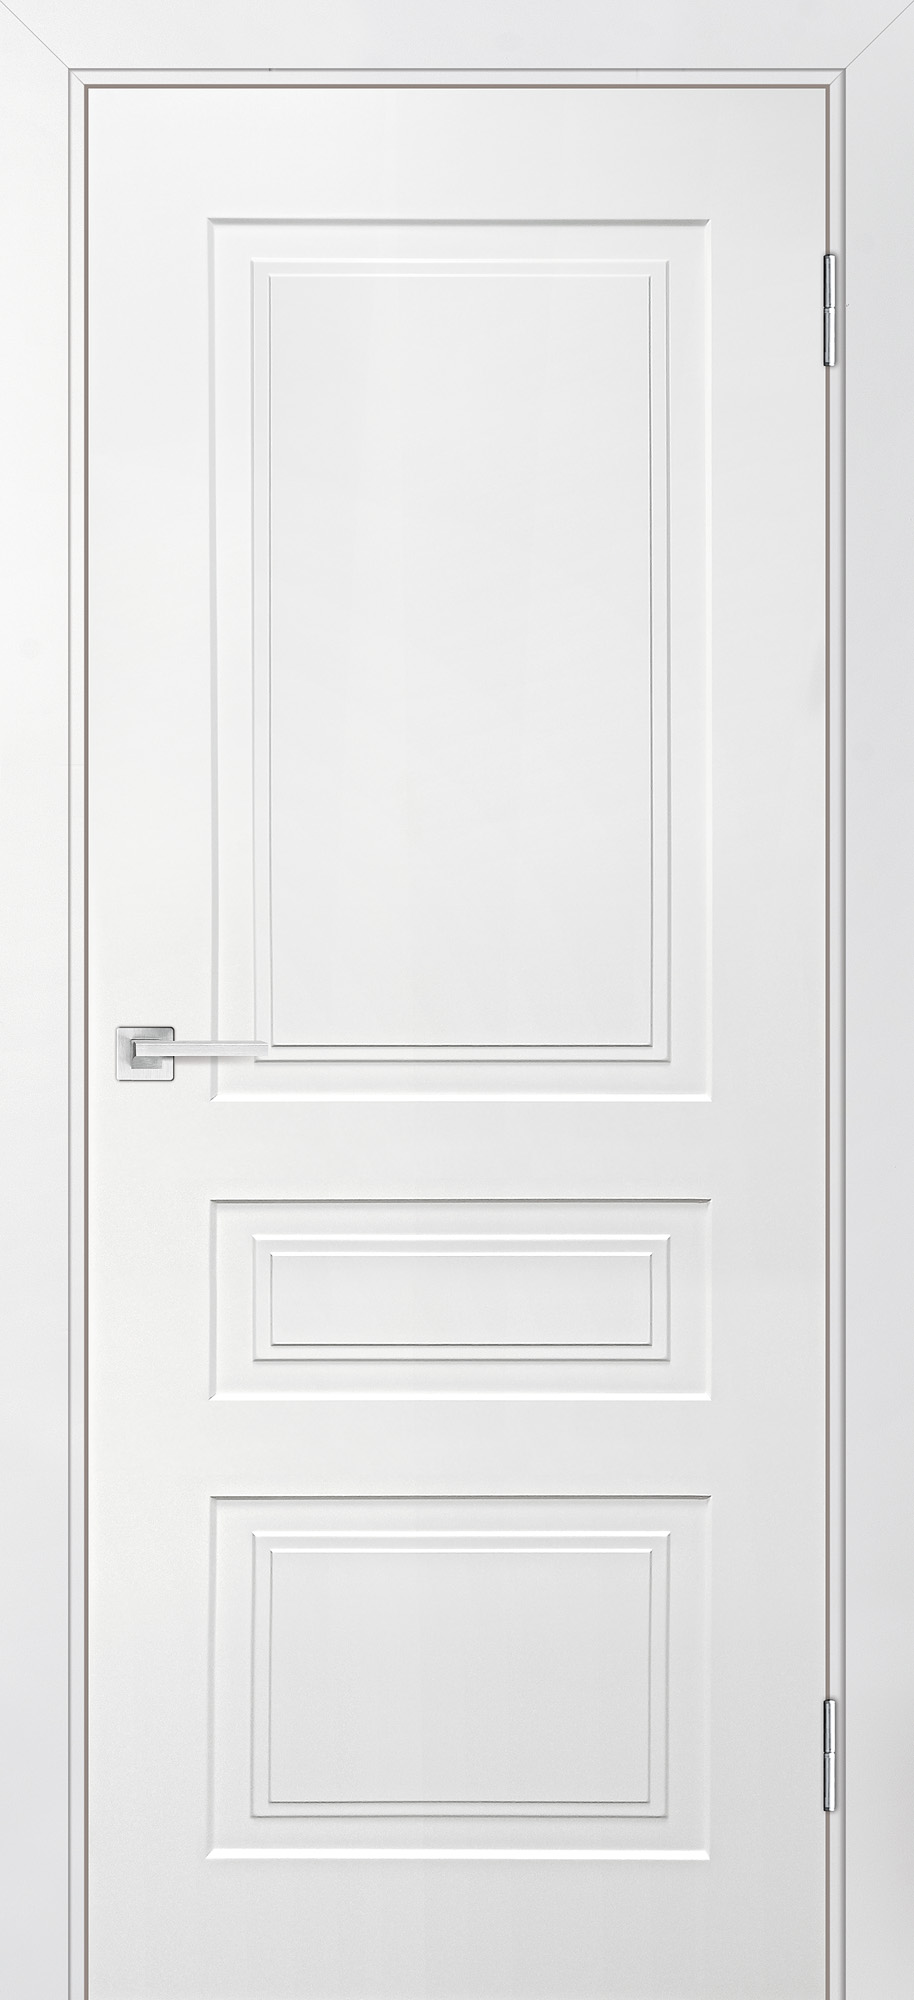 Двери крашеные (Эмаль) ТЕКОНА Смальта-Лайн 05 глухое Белый ral 9003 размер 200 х 70 см. артикул F0000093242